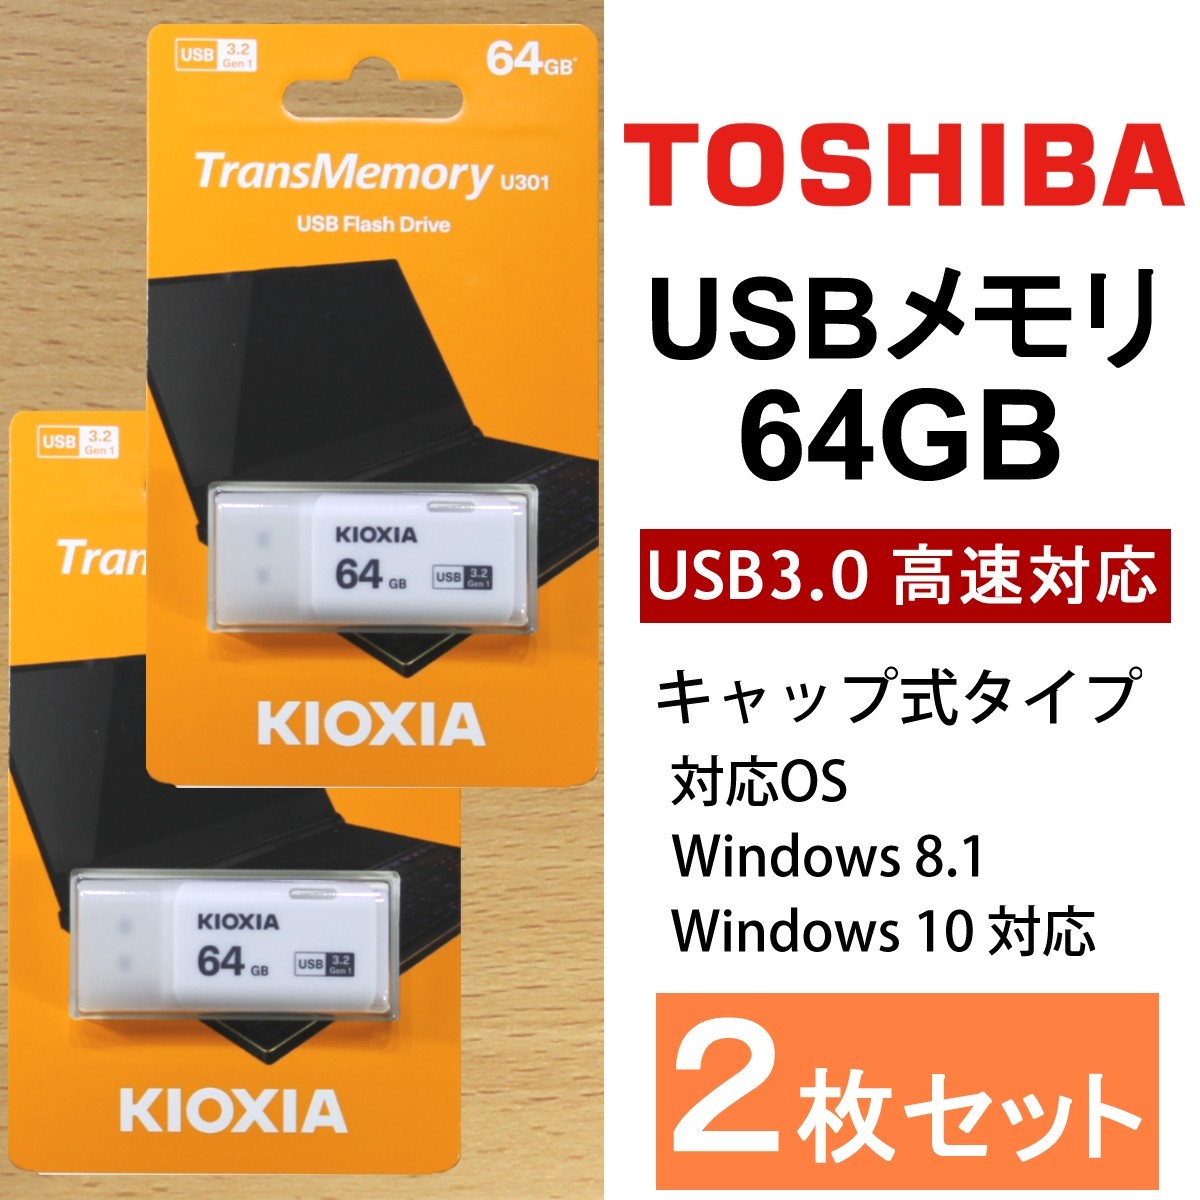 2個セット/ 東芝 キオクシア USBメモリ 64GB / USB3.0 高速対応 / キャップ式タイプ